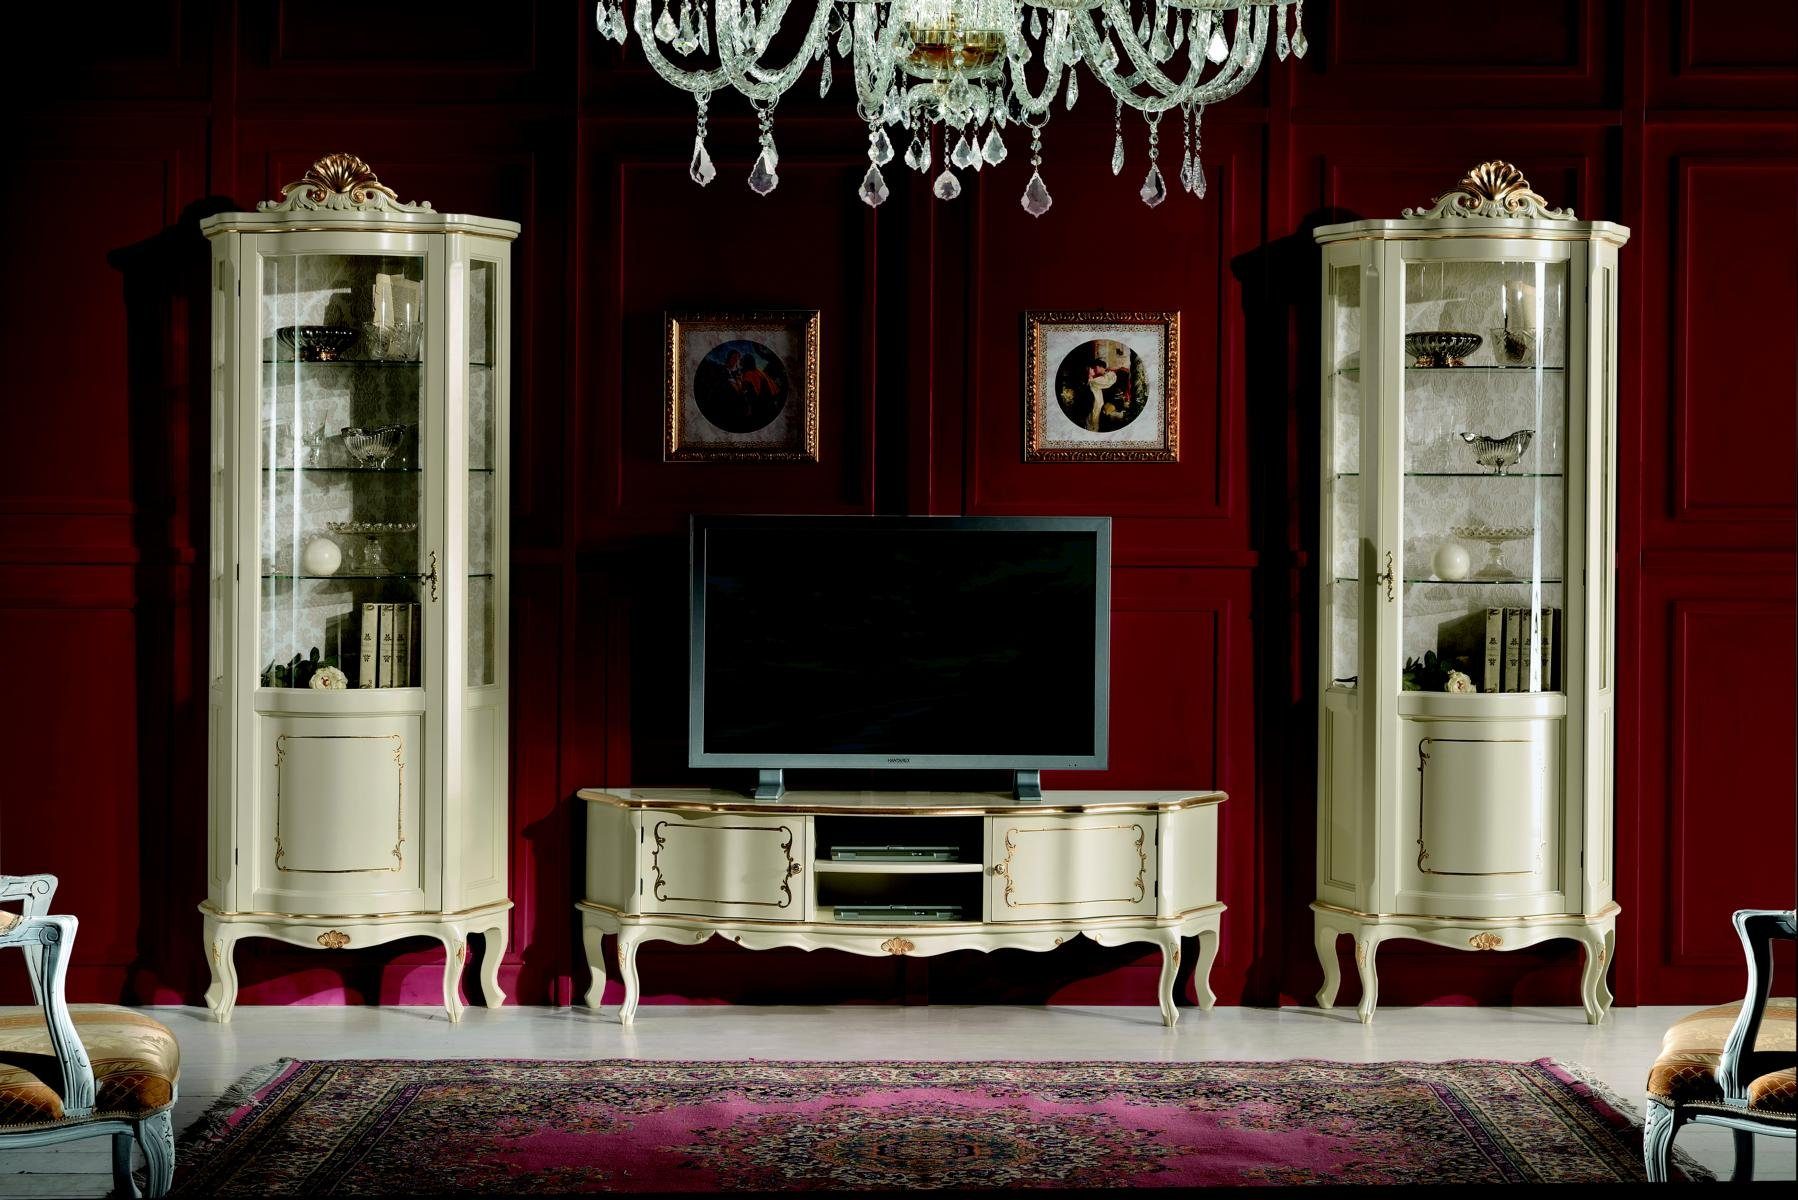 JVmoebel Wohnwand Set Garnitur 3tlg rtv mit 2x Vitrine Design Italienische Luxus Möbel